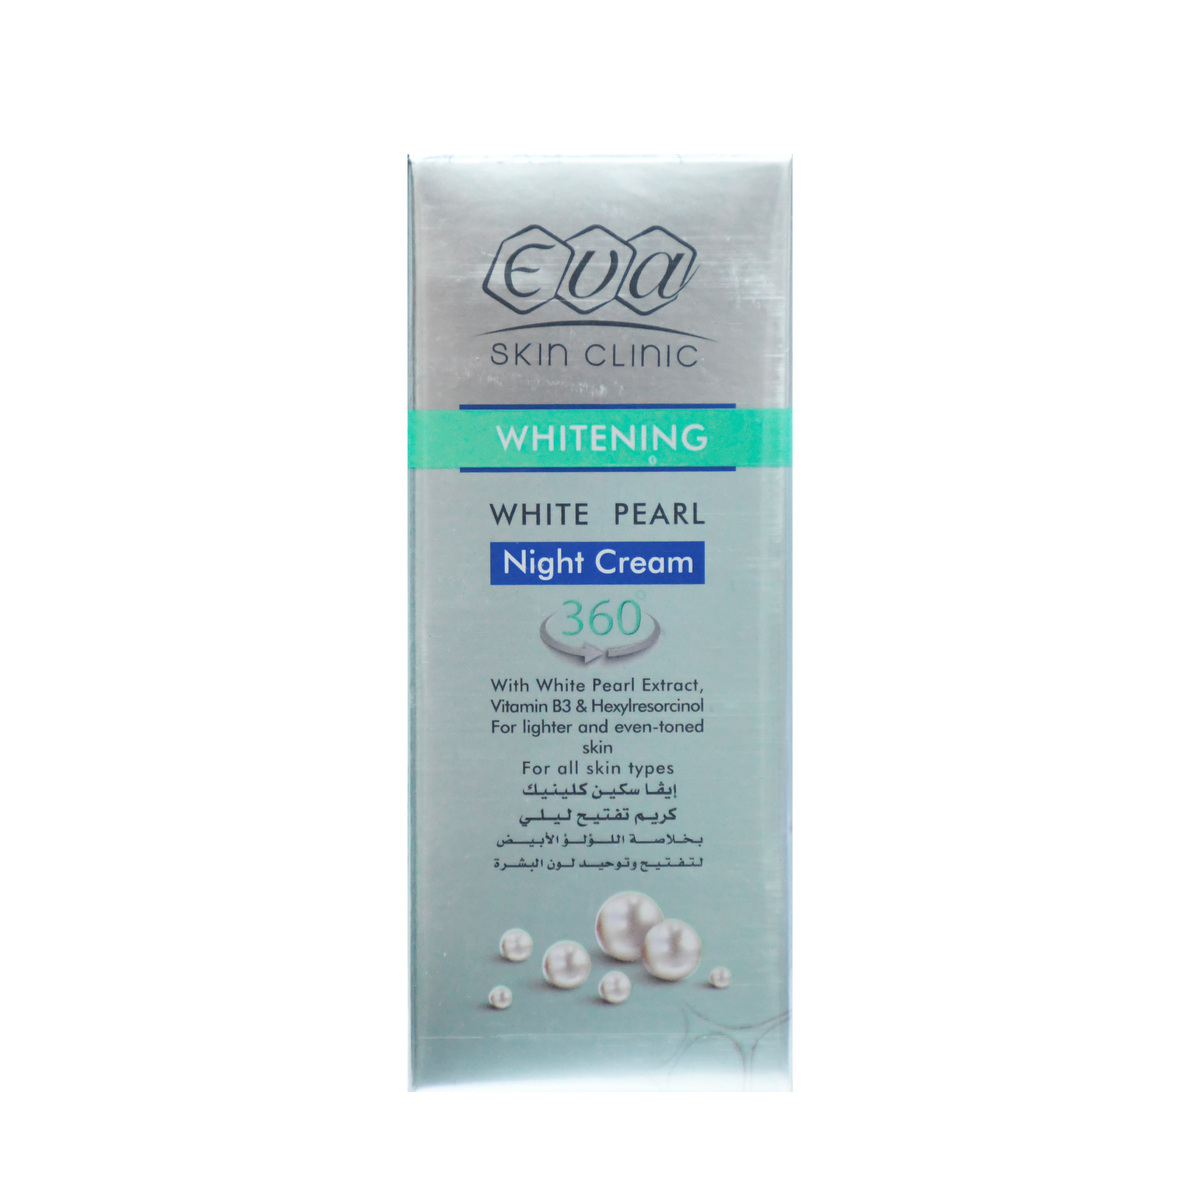 Eva Skin Clinic Whitening White Pearl Night Cream 50ml